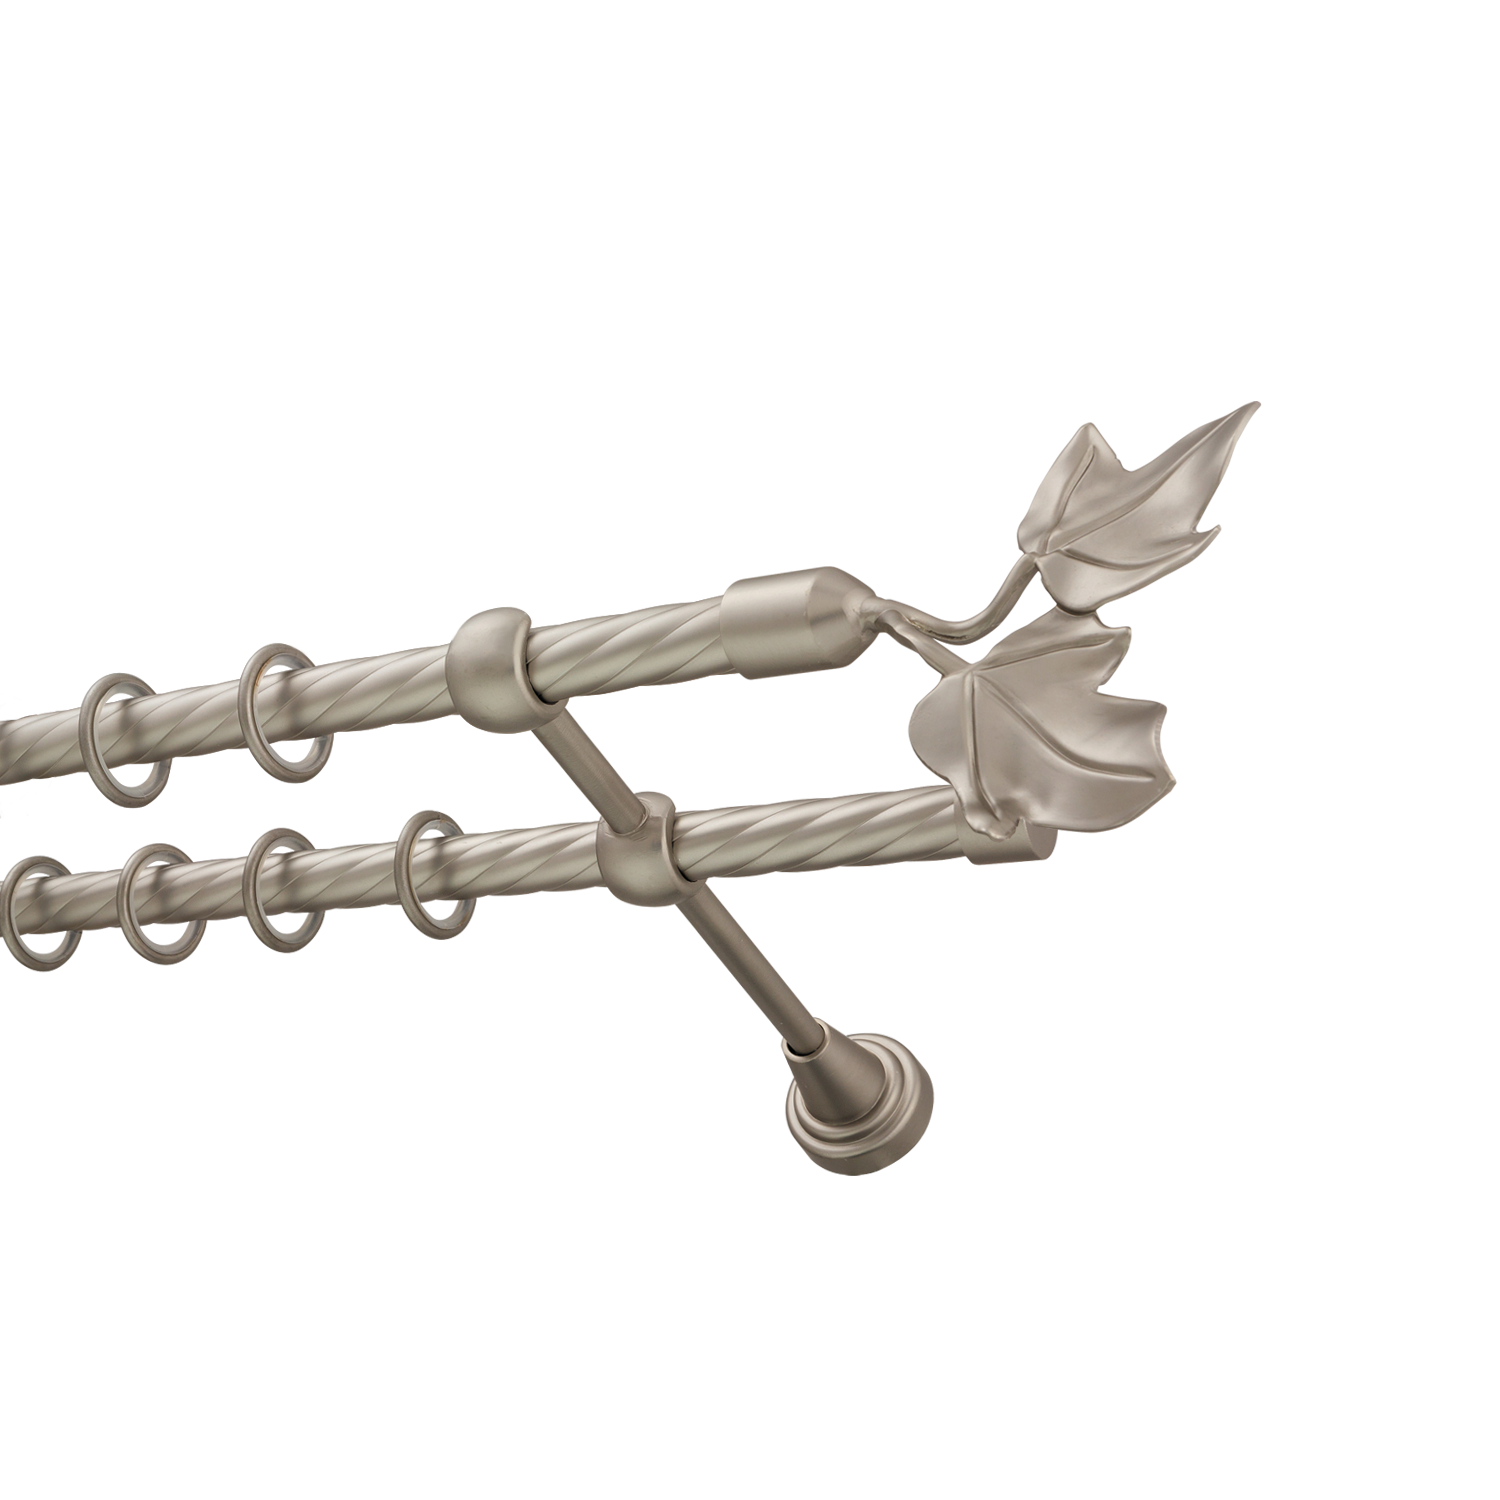 Металлический карниз для штор Листья, двухрядный 16/16 мм, сталь, витая штанга, длина 300 см - фото Wikidecor.ru